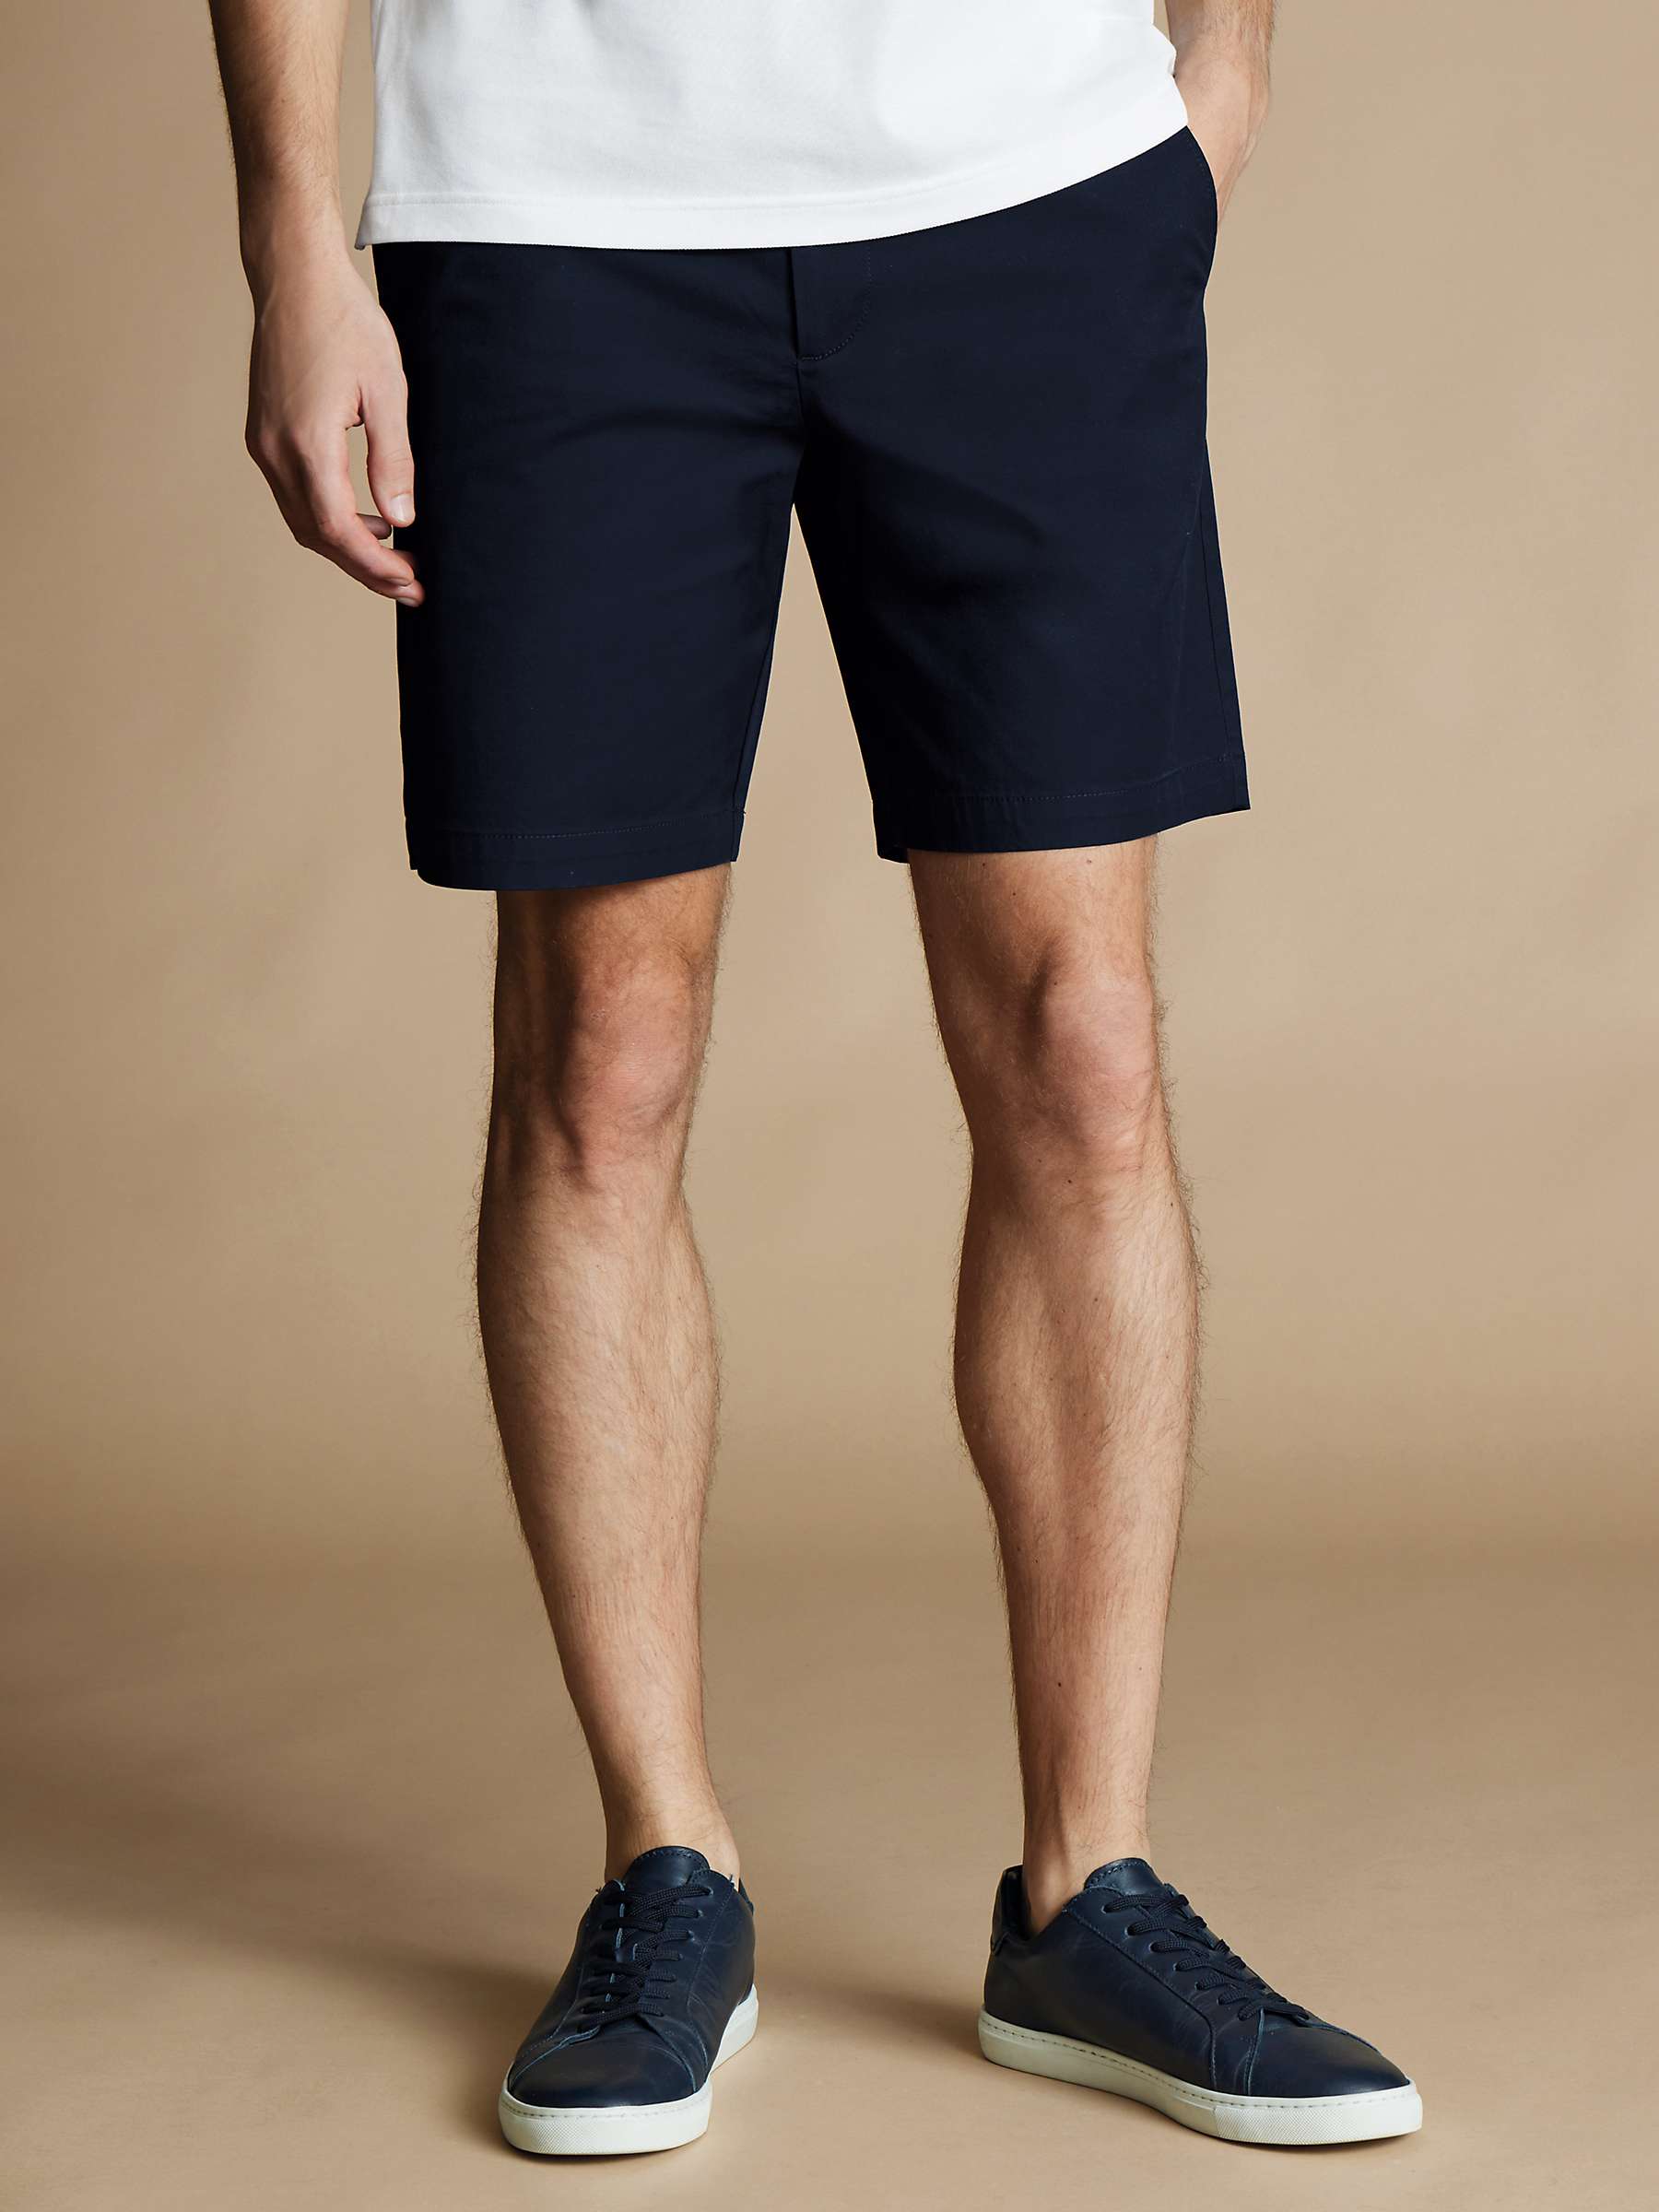 Buy Charles Tyrwhitt Chino Cotton Shorts, Dark Navy Online at johnlewis.com